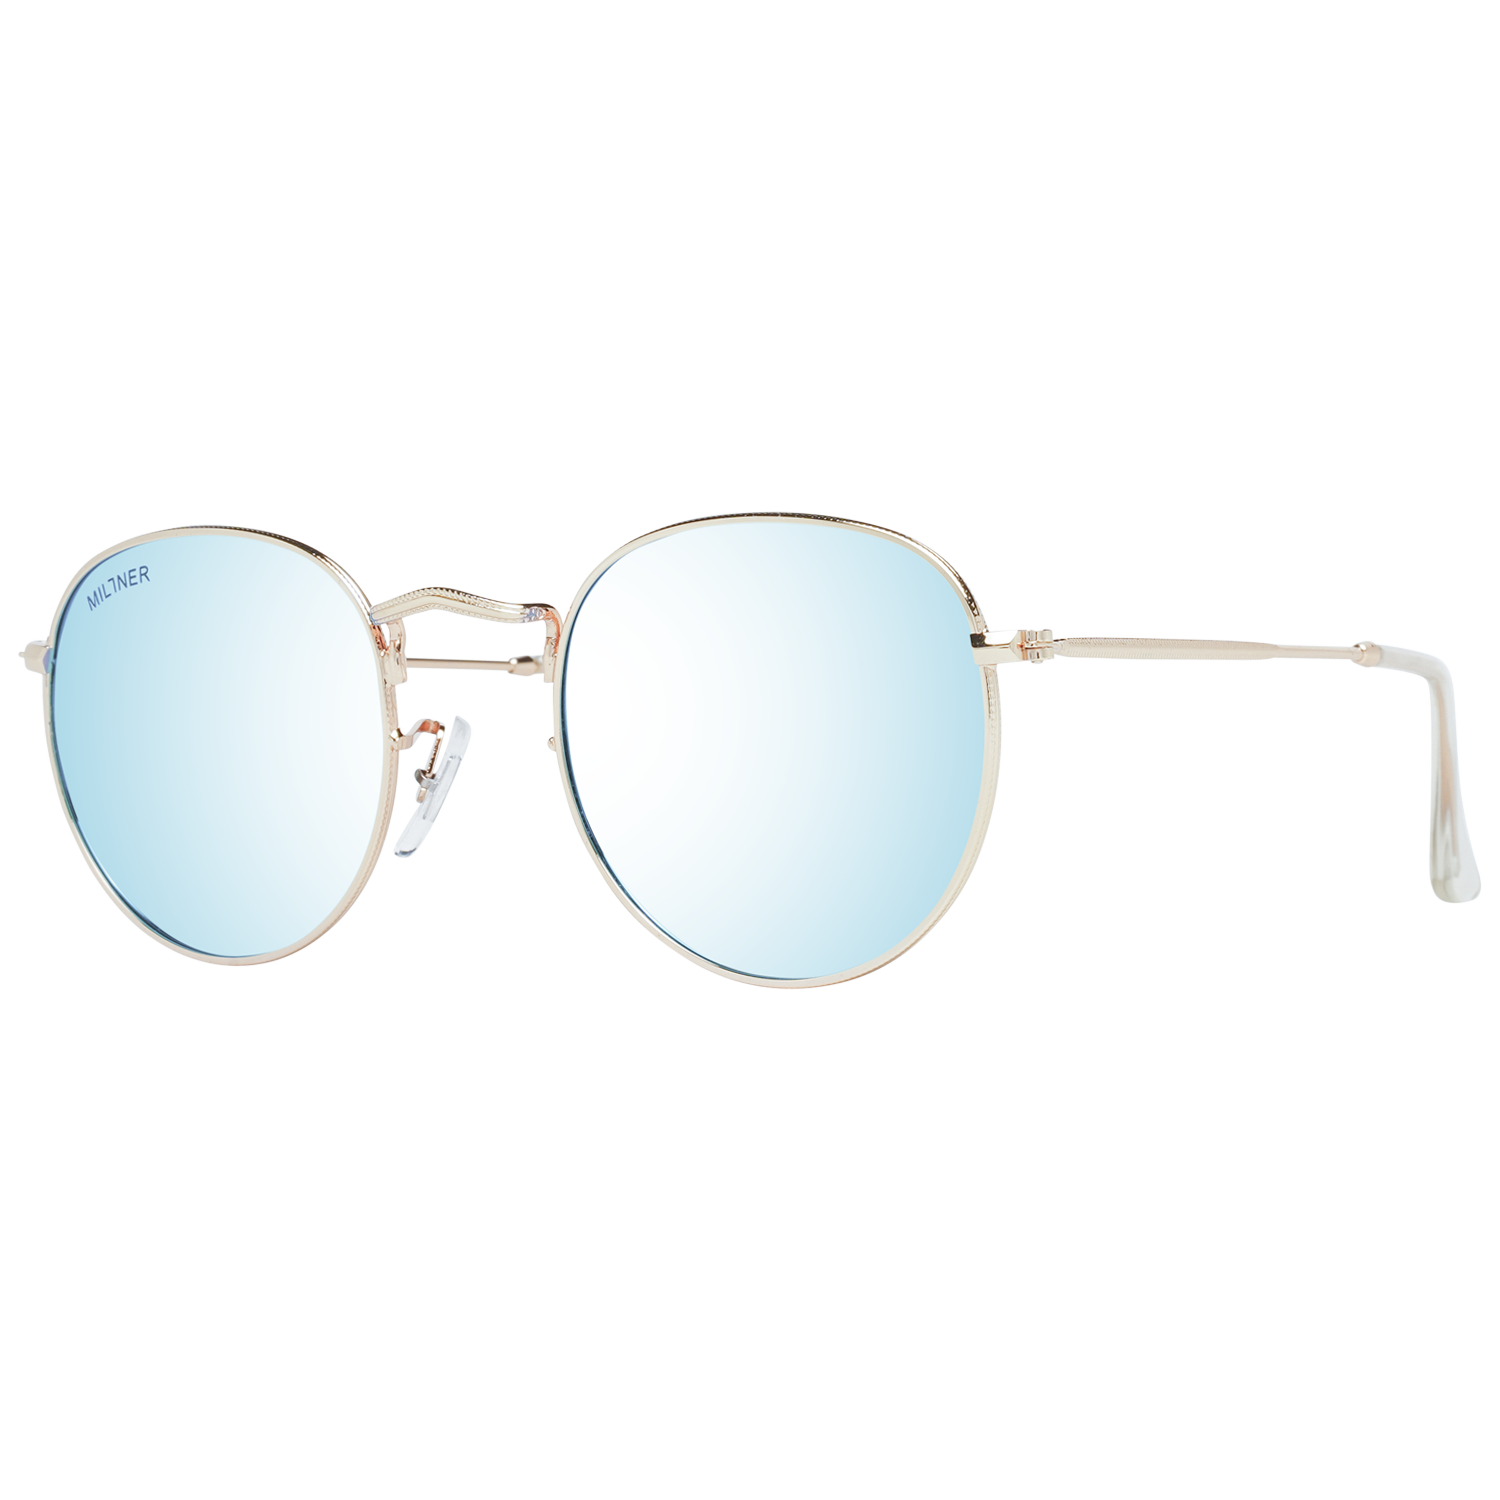 Millner Sunglasses Millner Sunglasses 0020105 Covent Garden Eyeglasses Eyewear UK USA Australia 